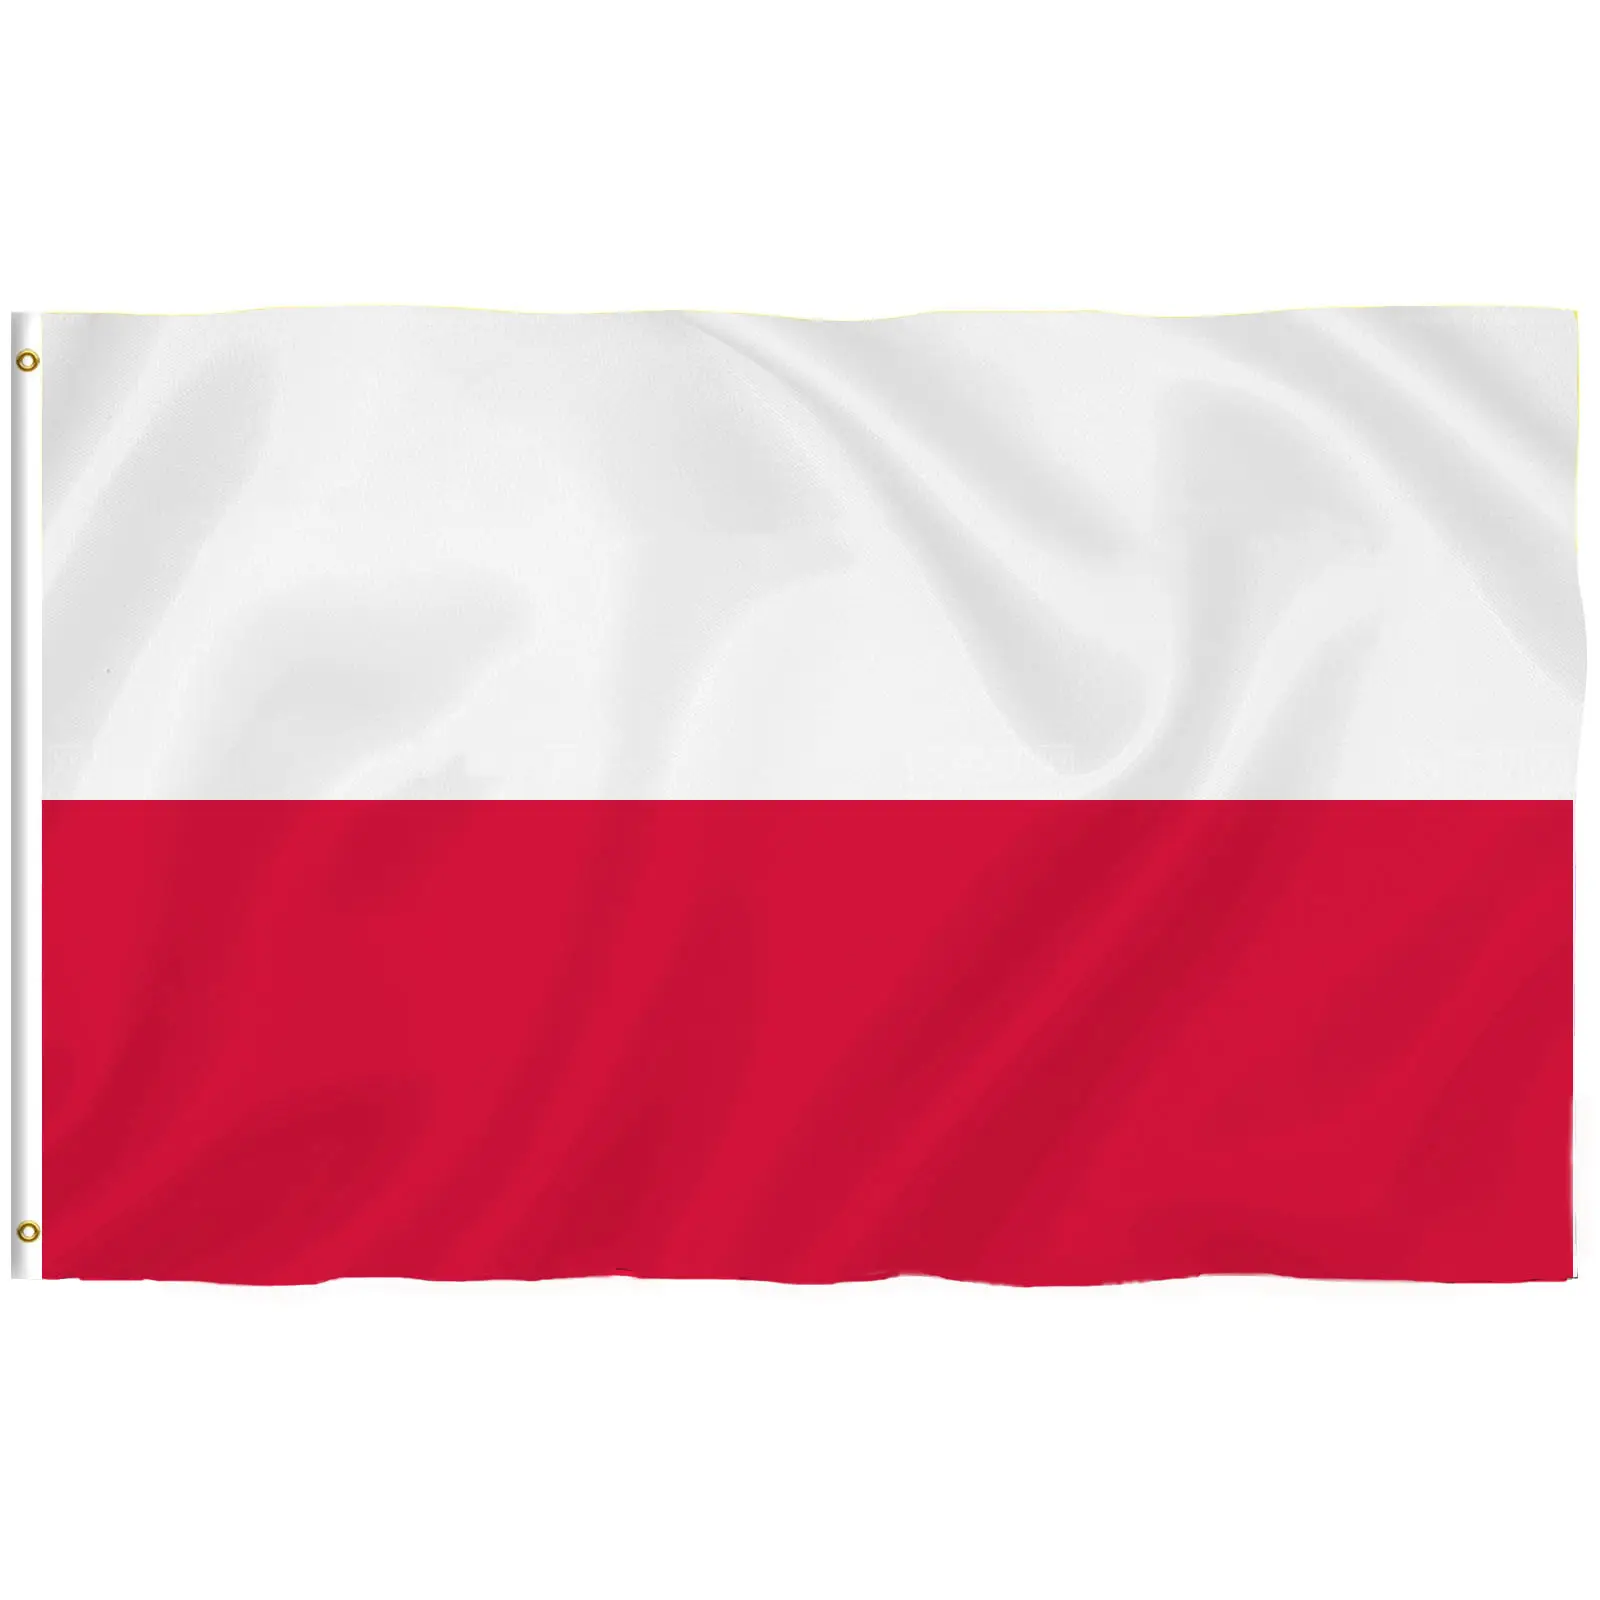 Fabbricazione all'ingrosso nuovo stile bandiera della polonia 3 x5ft bandiere bandiera tutti i paesi